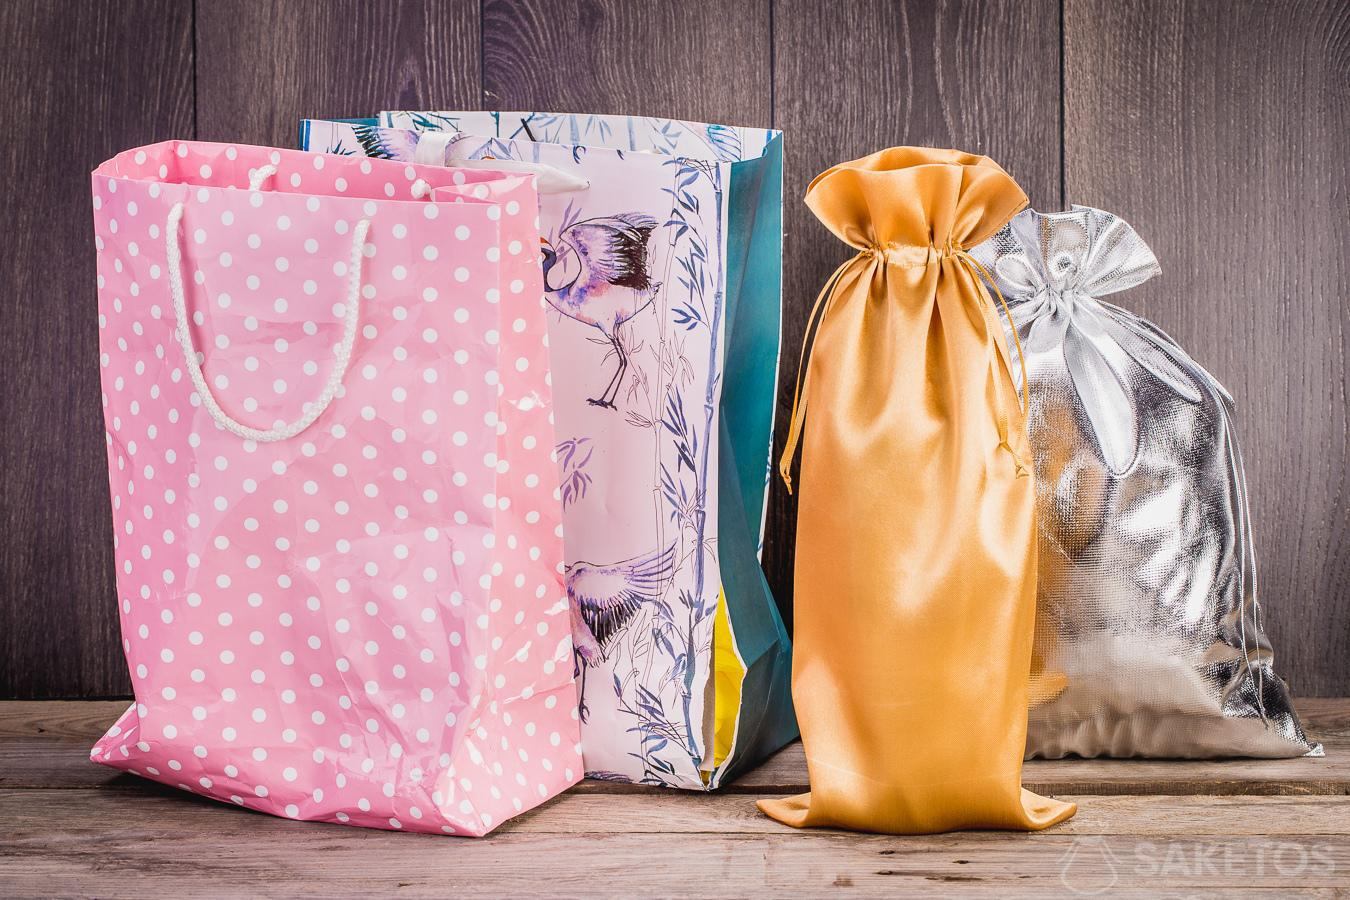 5 razones por las que cambiarás las bolsas de papel - Saketos Blog